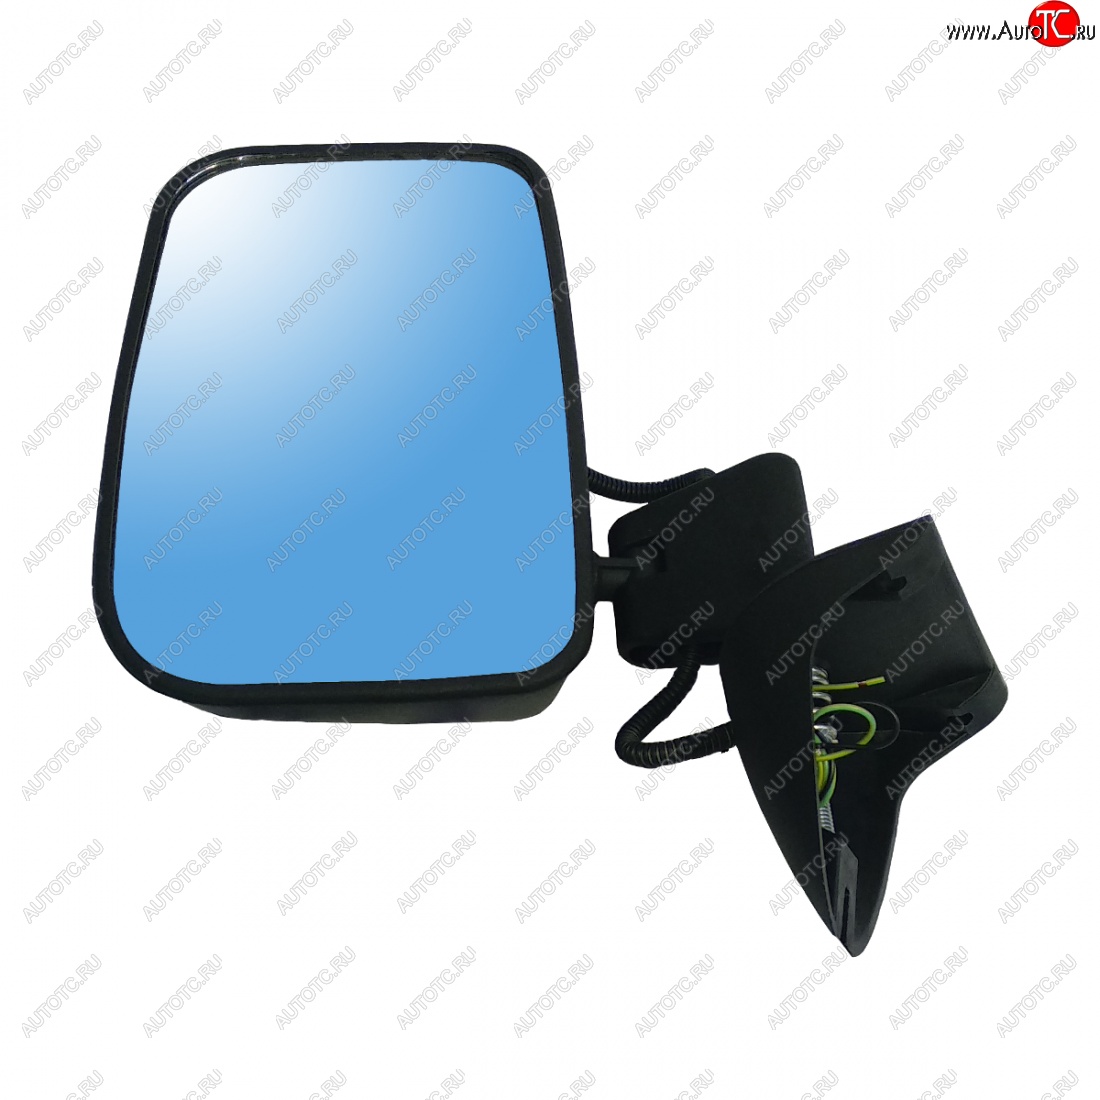 399 р. Левое боковое зеркало заднего вида (Тайга) Автоблик 2 ВИС 2346 бортовой грузовик рестайлинг (2021-2024) (без антибликового покрытия)